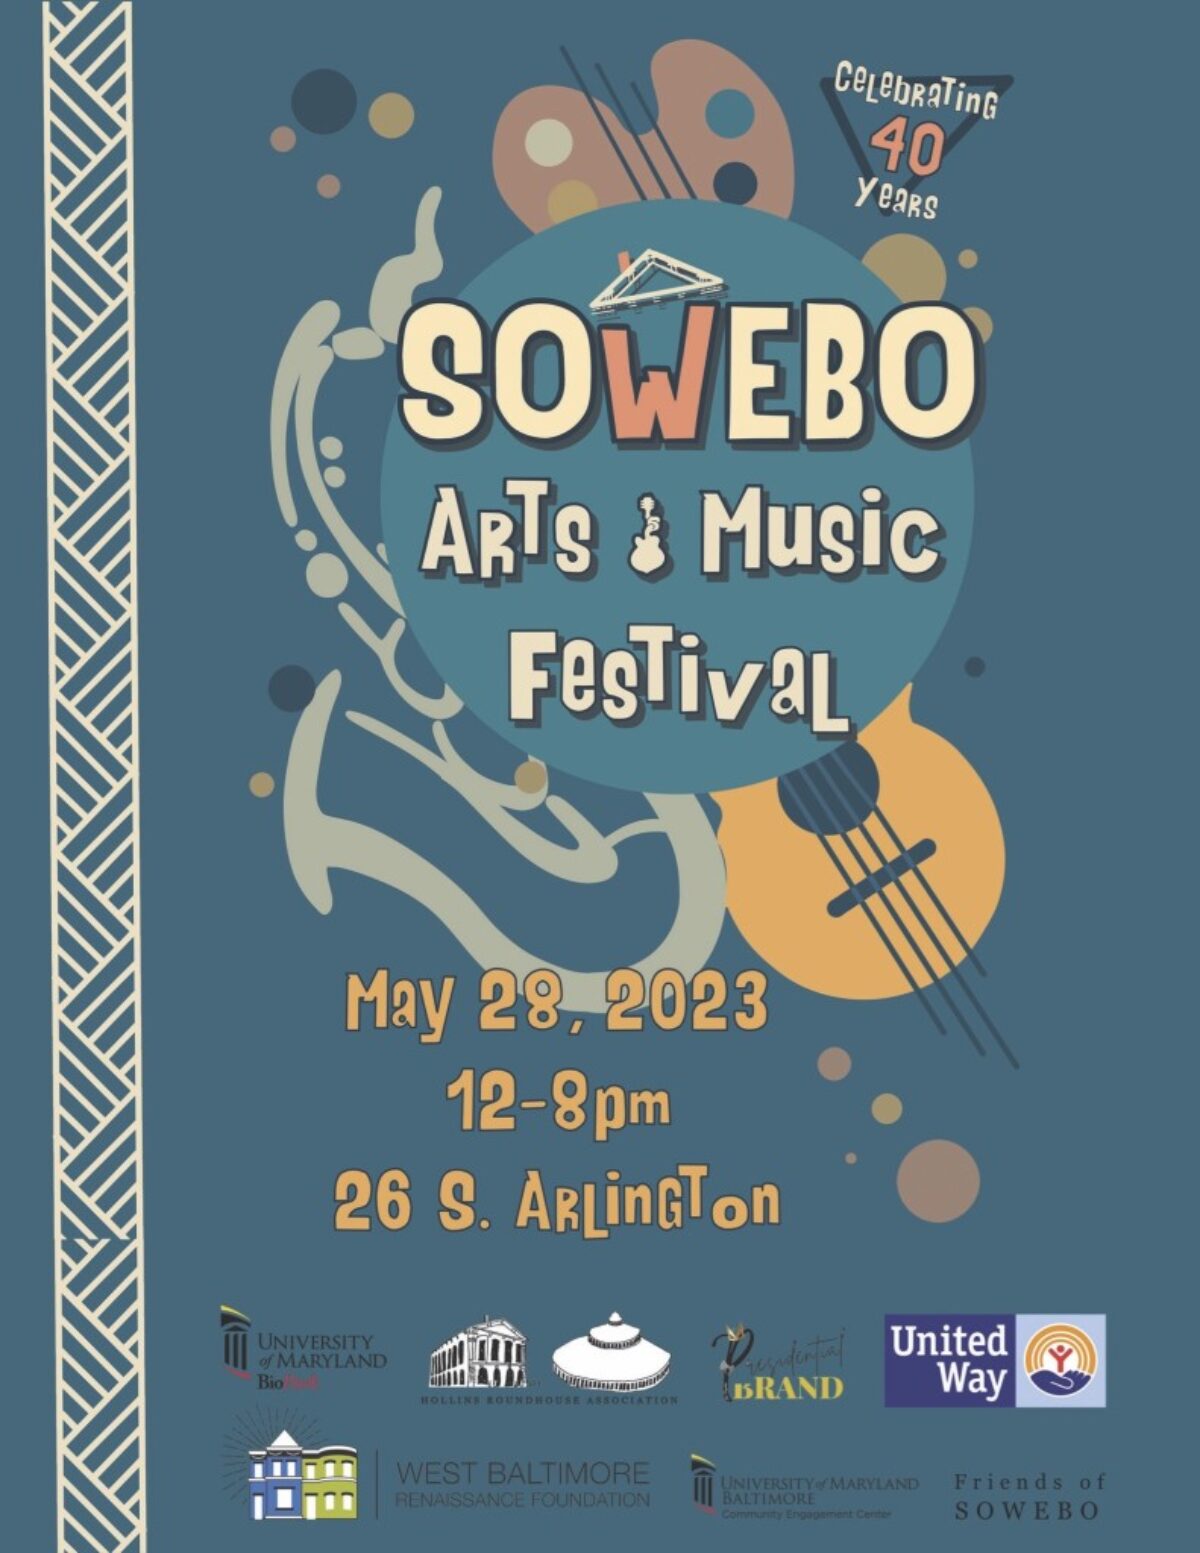 SOWEBO Art & Music Festival Visit Baltimore